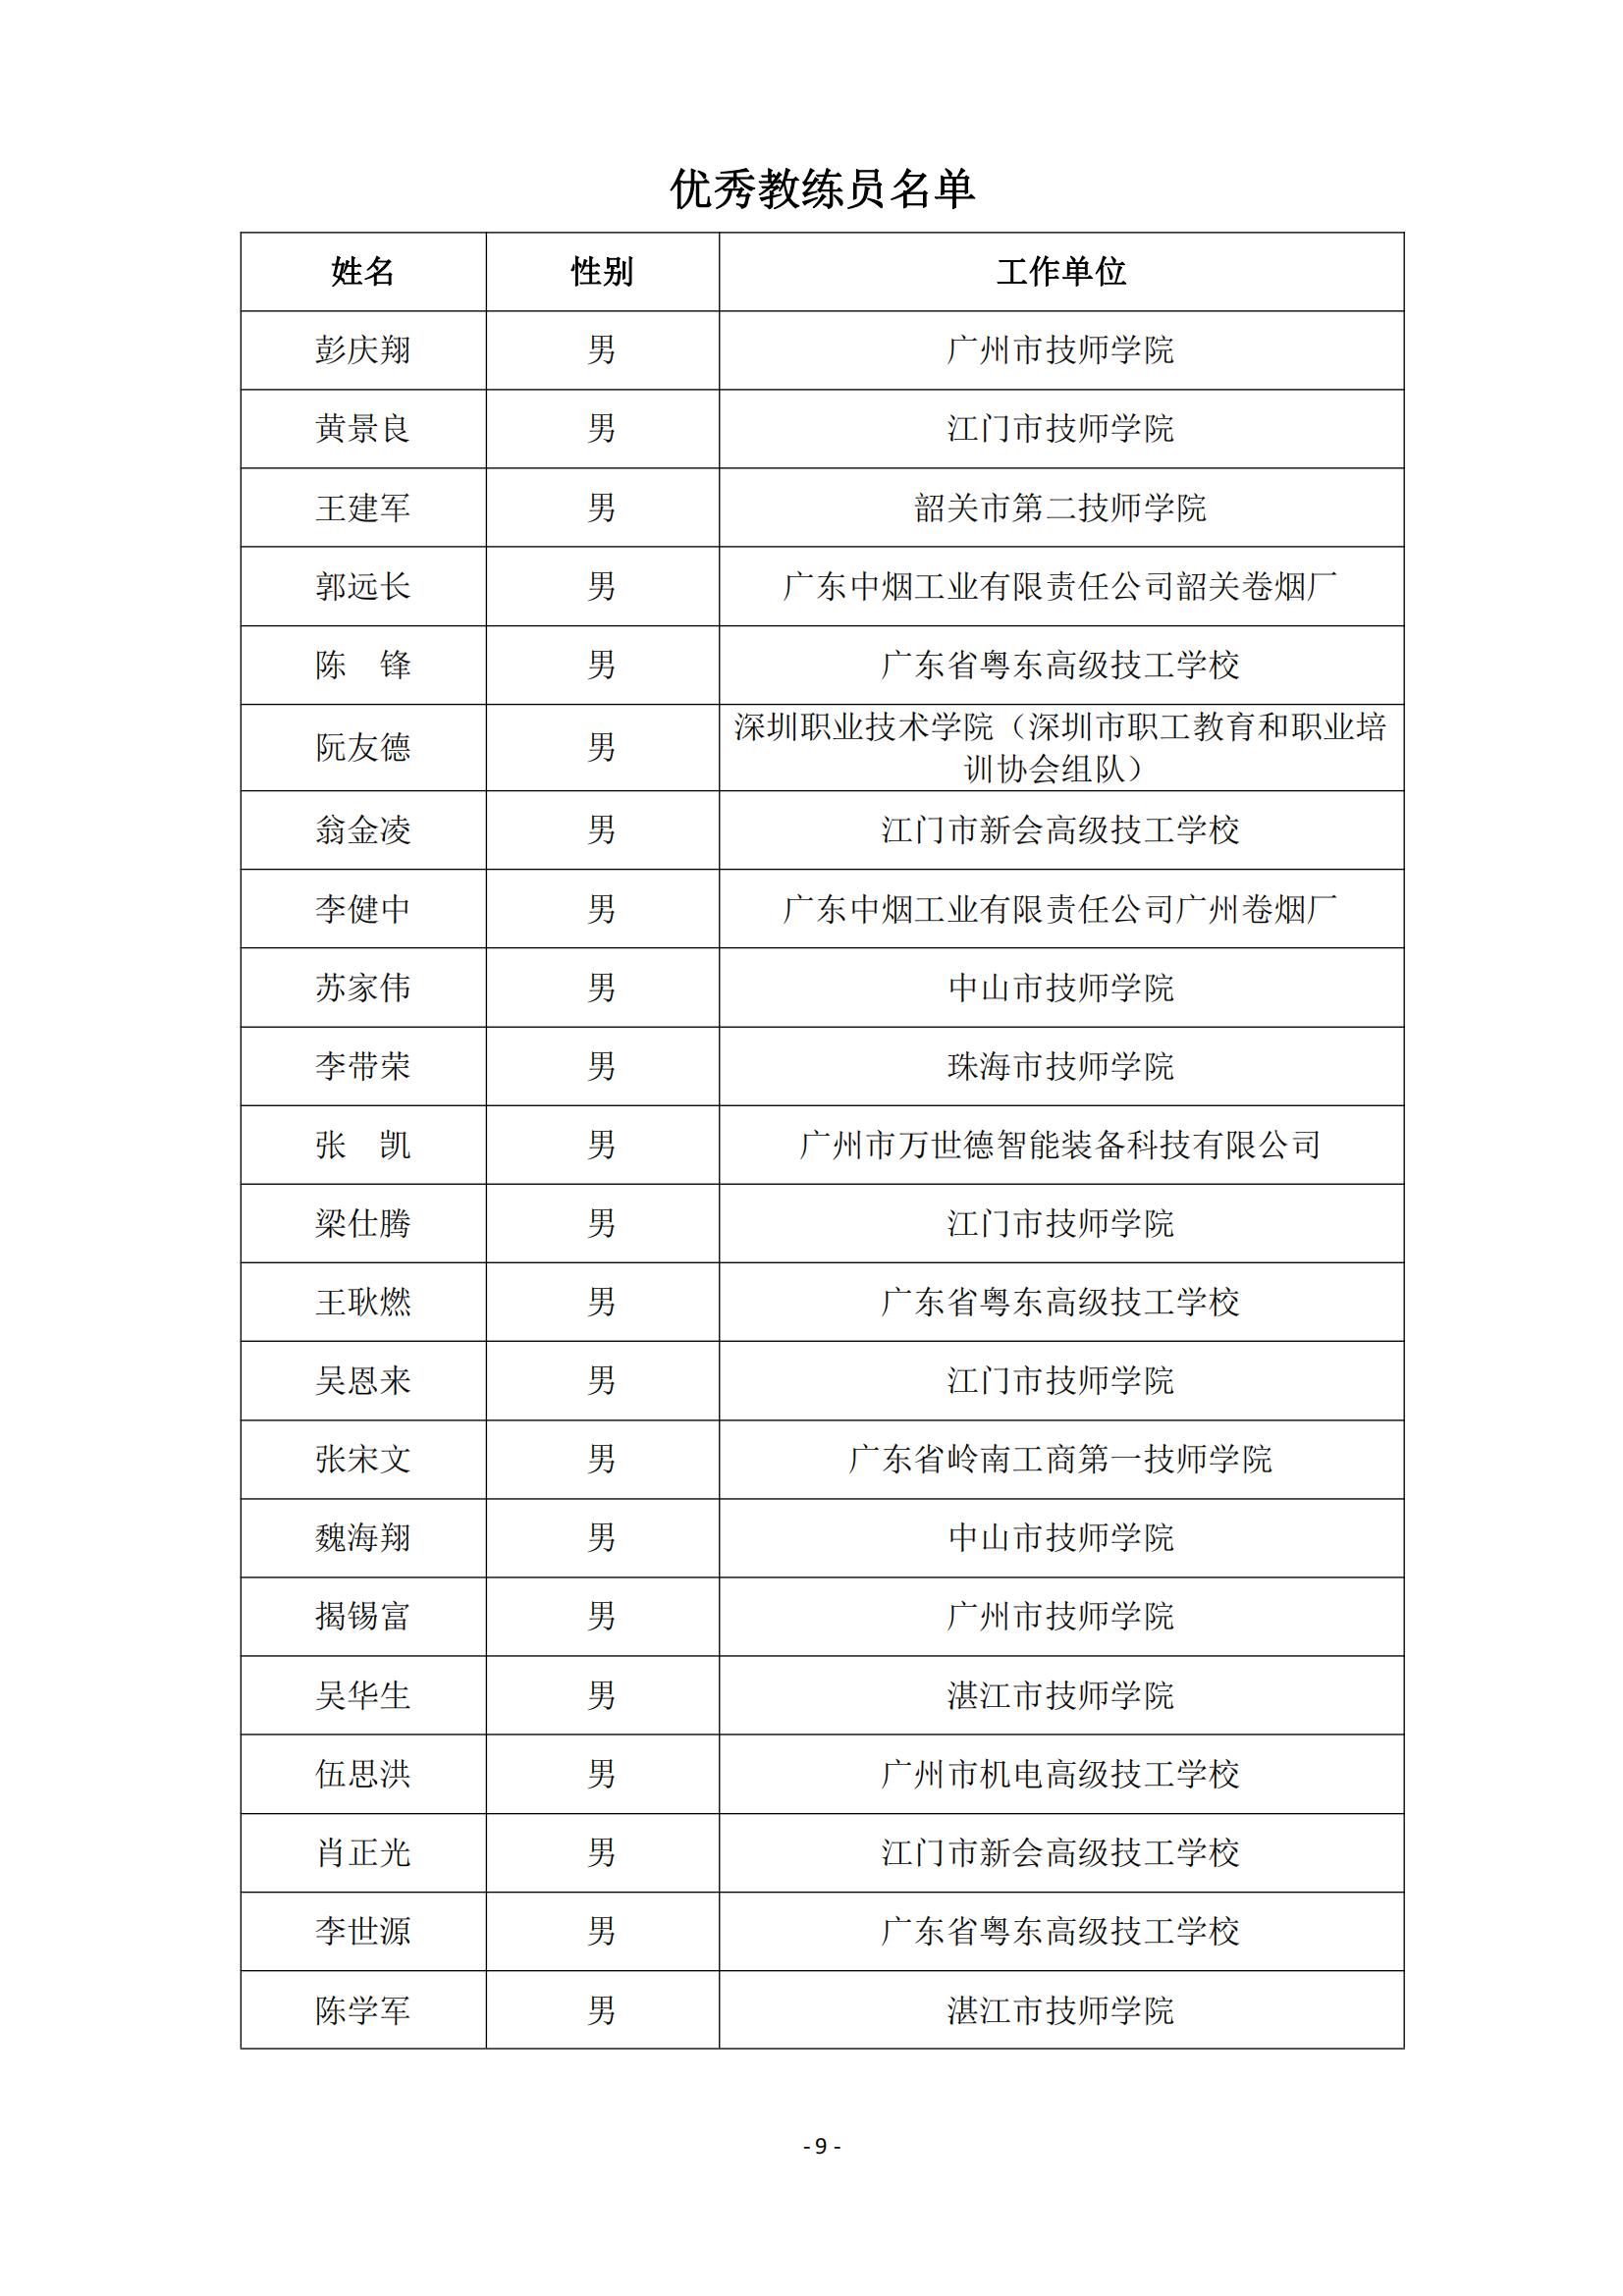 2015 年中国技能大赛--广东省机电一体化职业技能竞赛_08.jpg